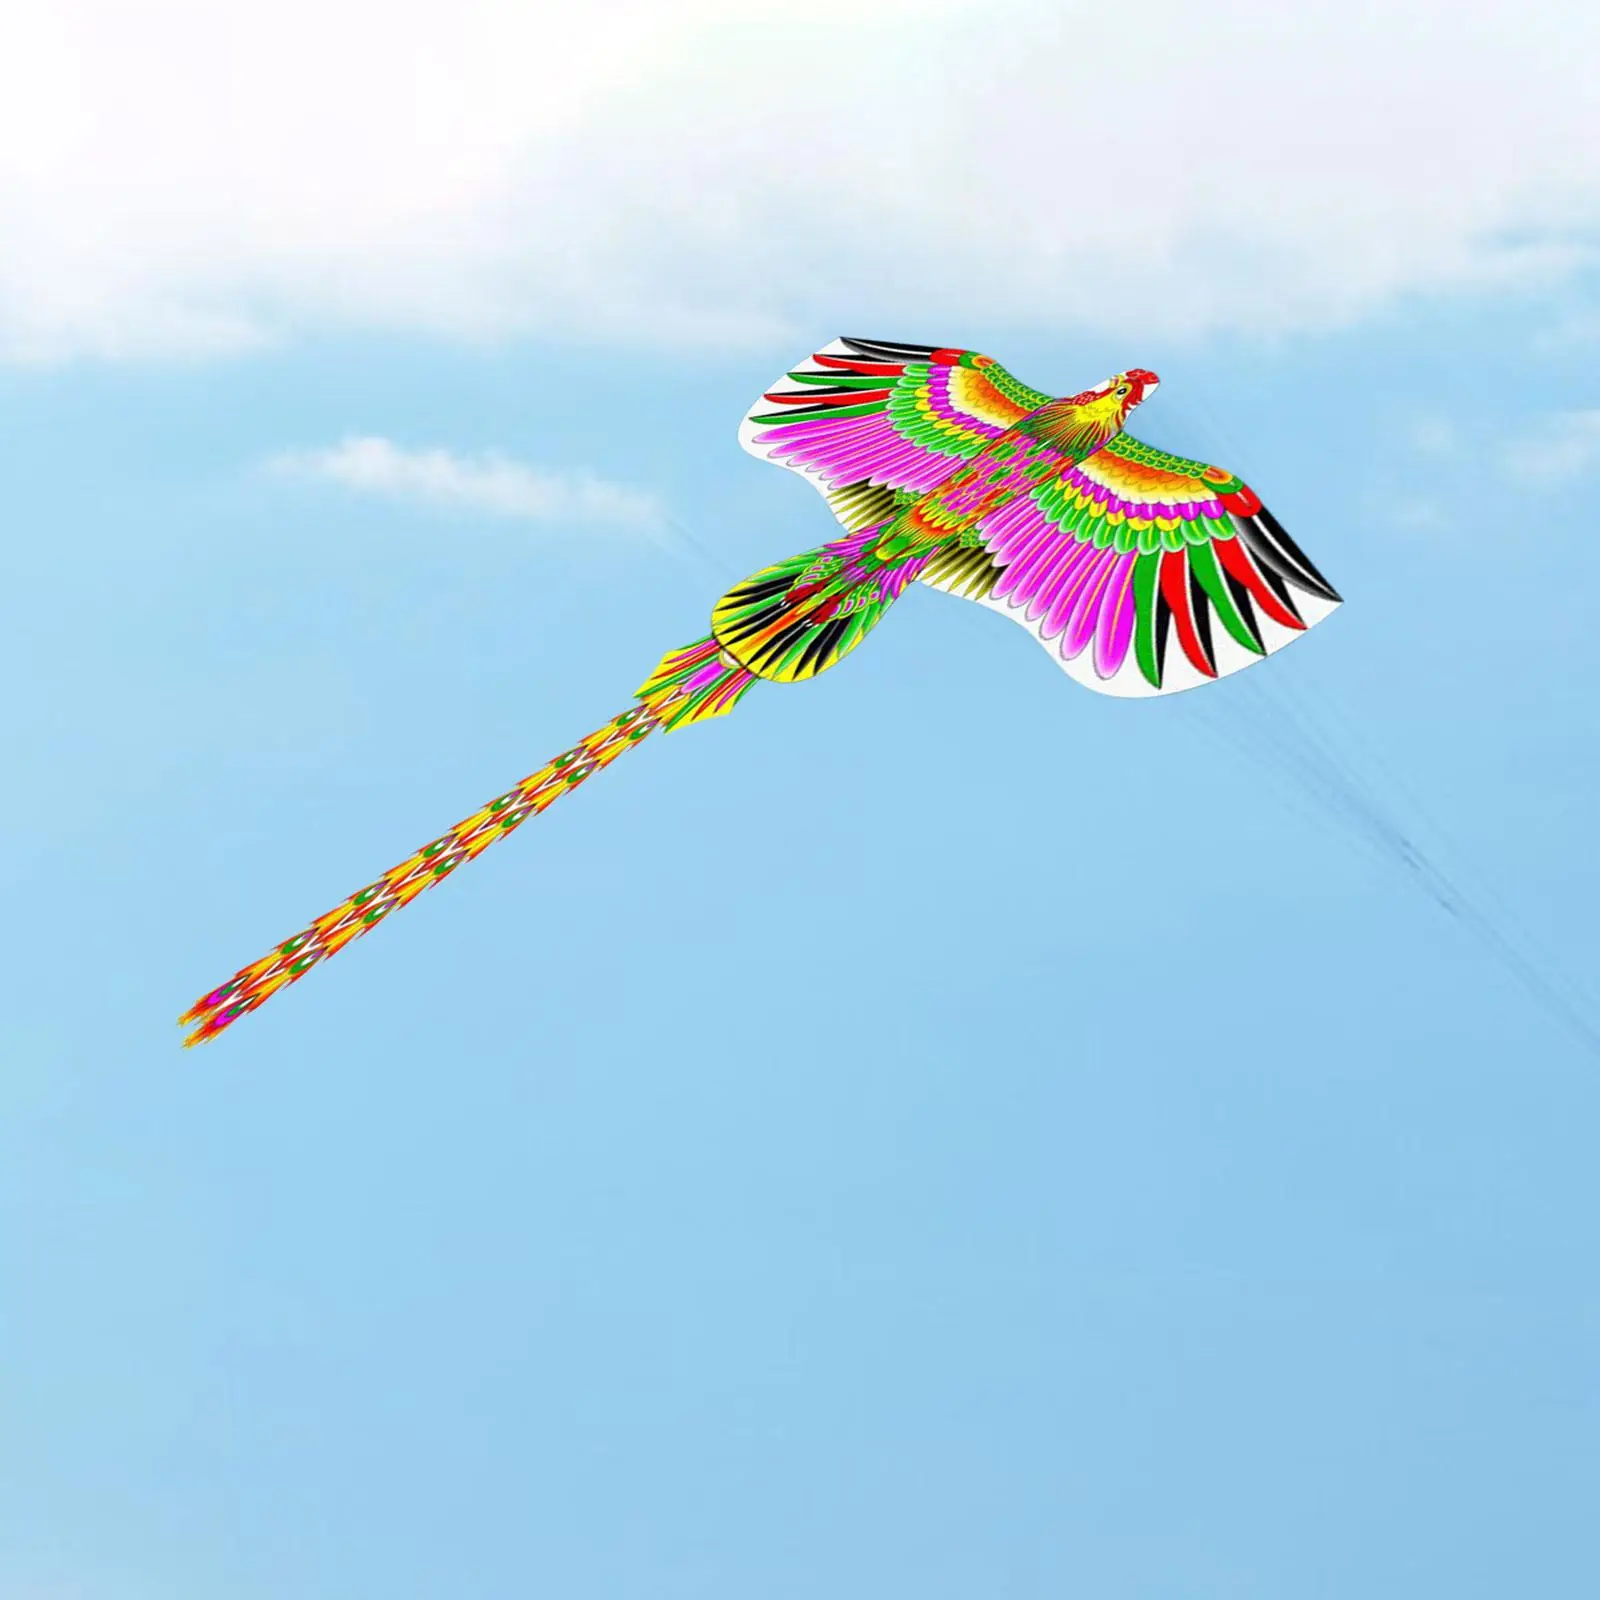 

Большой воздушный змей красочный 2,5-дюймовый спортивный воздушный змей с длинным хвостом для парка, игры на открытом воздухе, газона, семейных вечеринок, пляжа